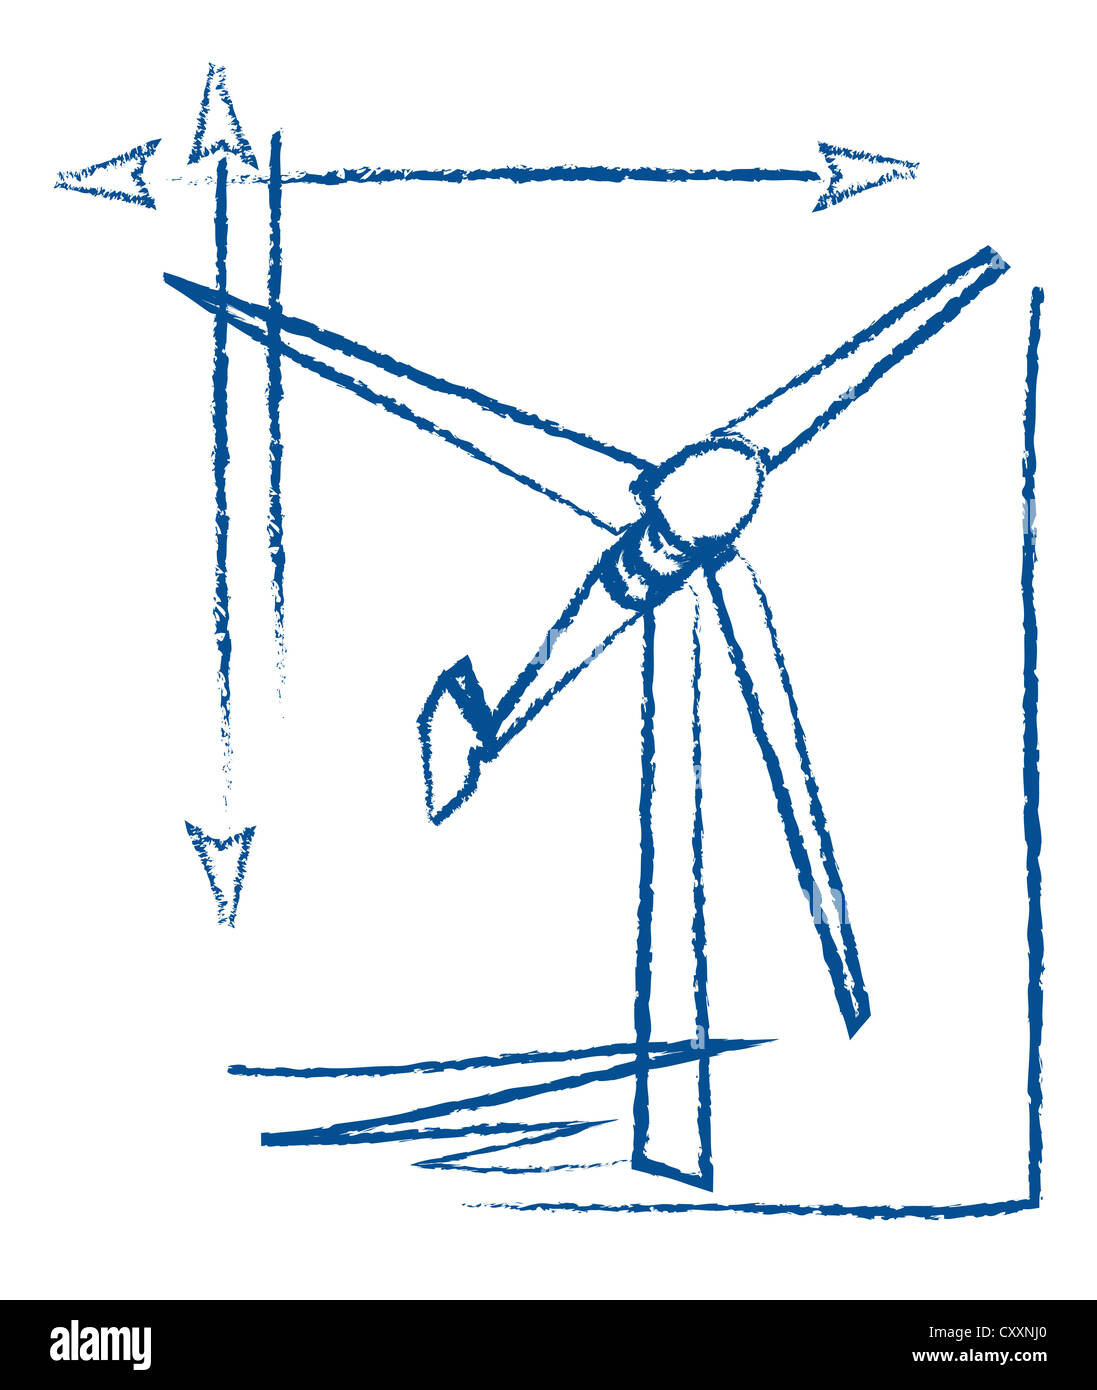 Windkraftanlage, technische Zeichnung, illustration Stockfoto